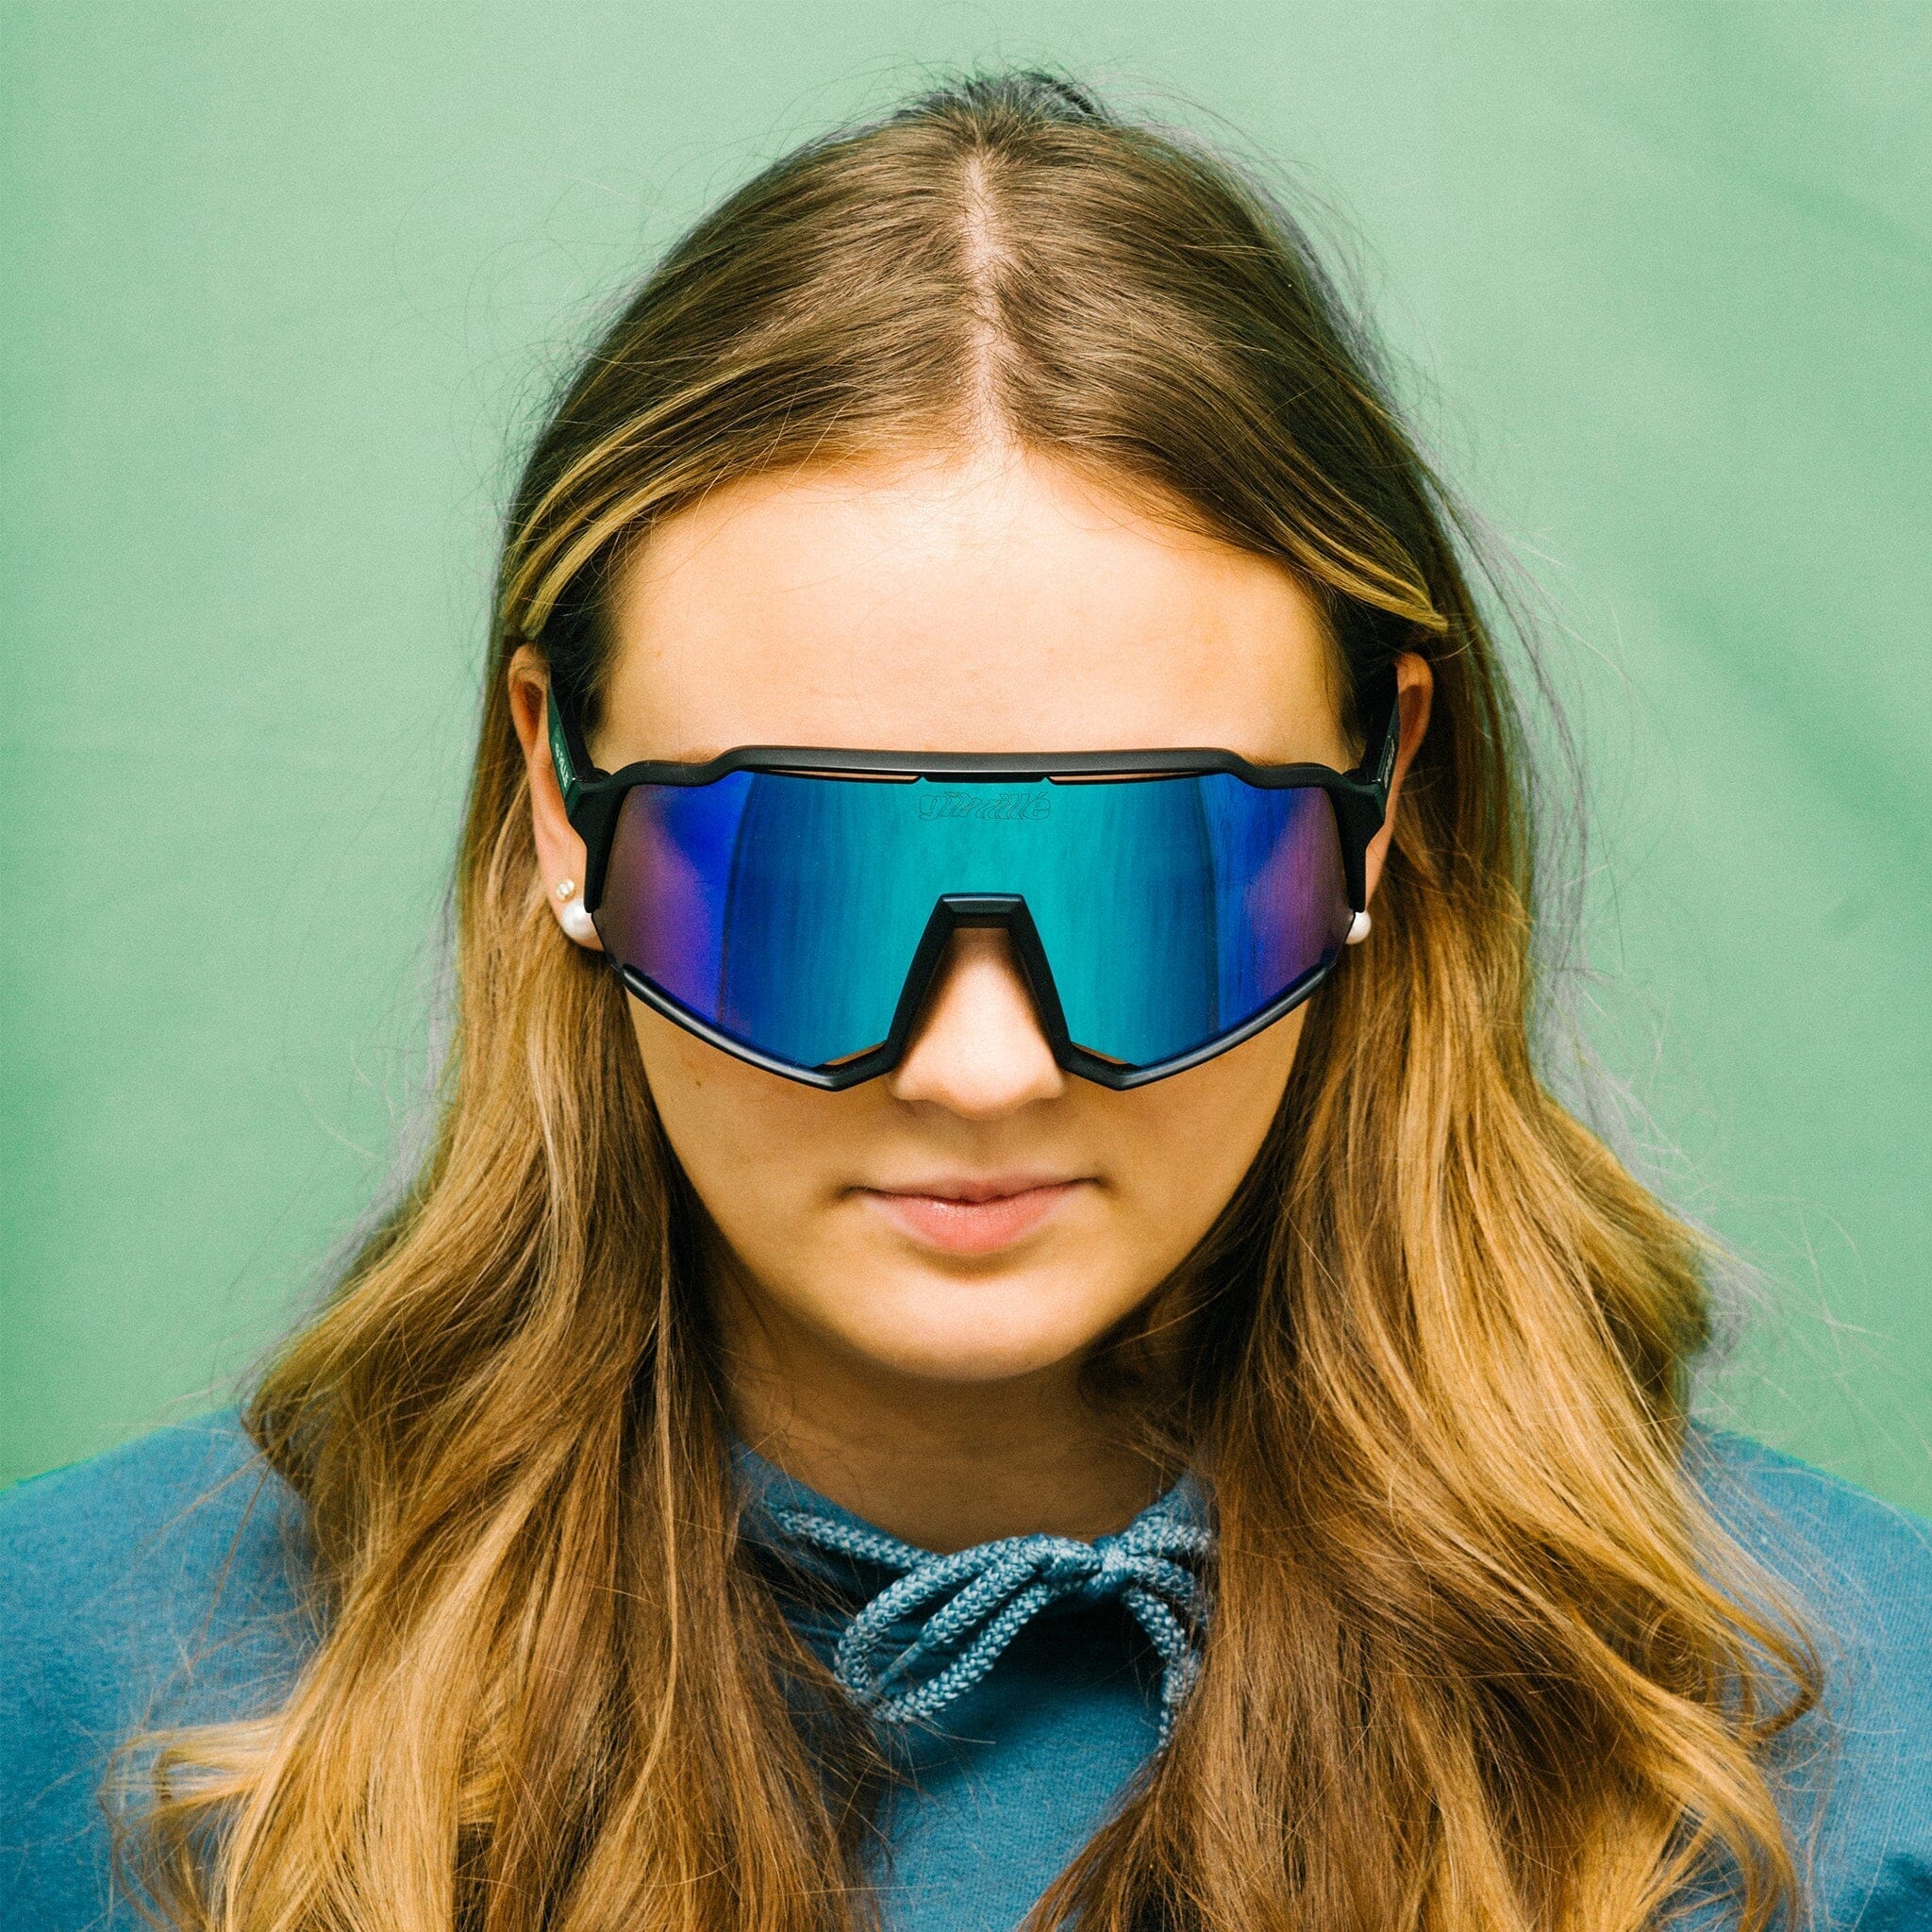 gib.rille-sonnenbrille-future-glasses-schnelle-brille techno brille - festival brille